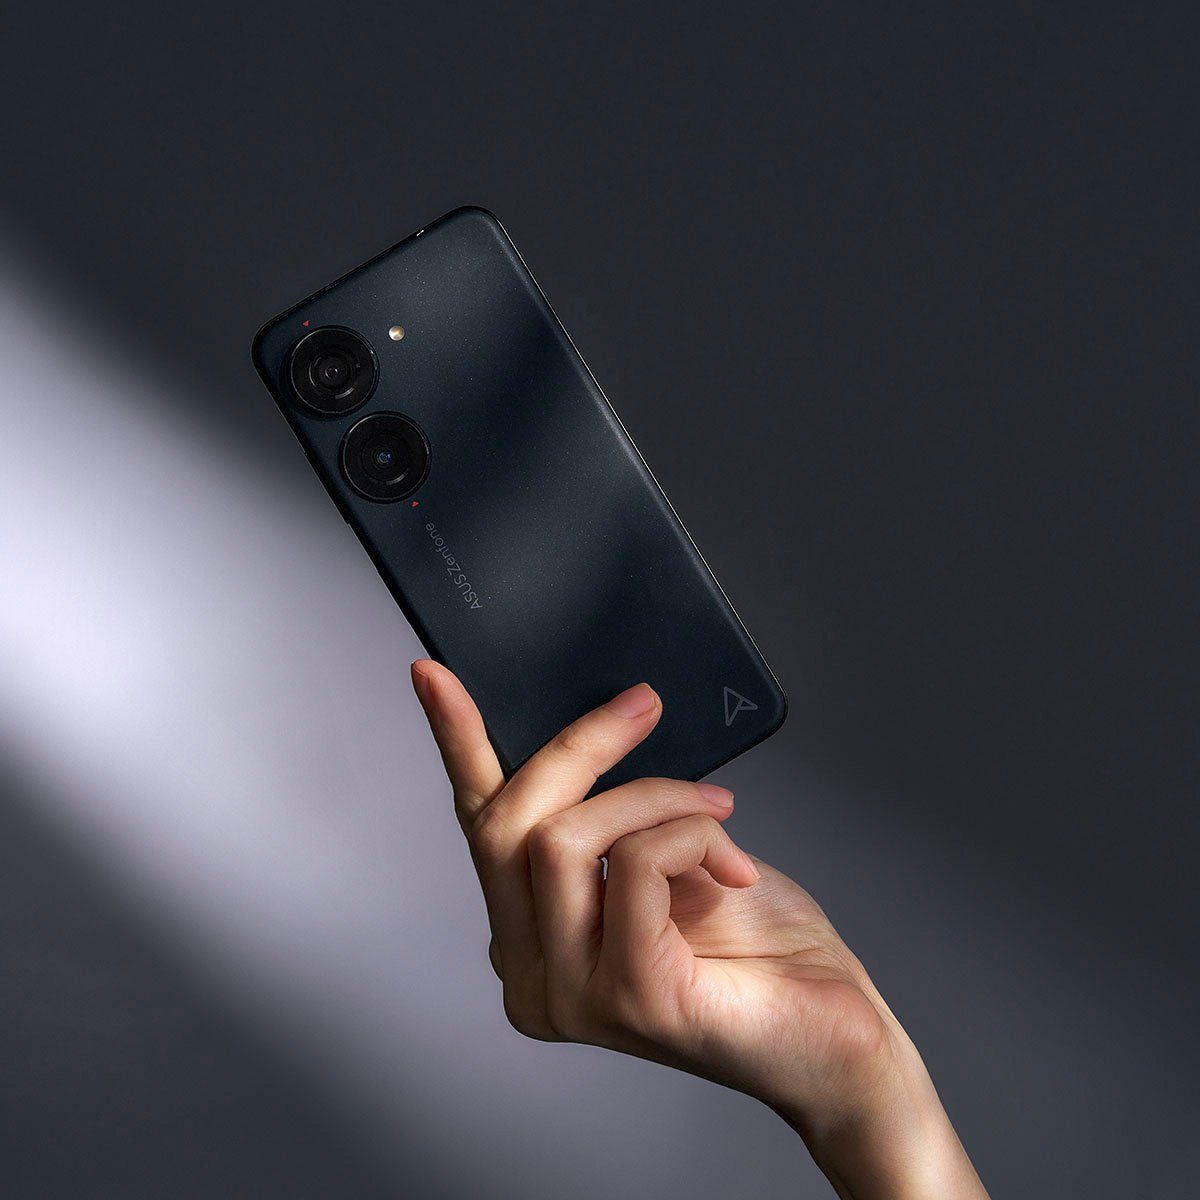 Asus ZENFONE 10 Smartphone (14,98 512 GB 50 Zoll, MP Speicherplatz, Kamera) cm/5,9 schwarz